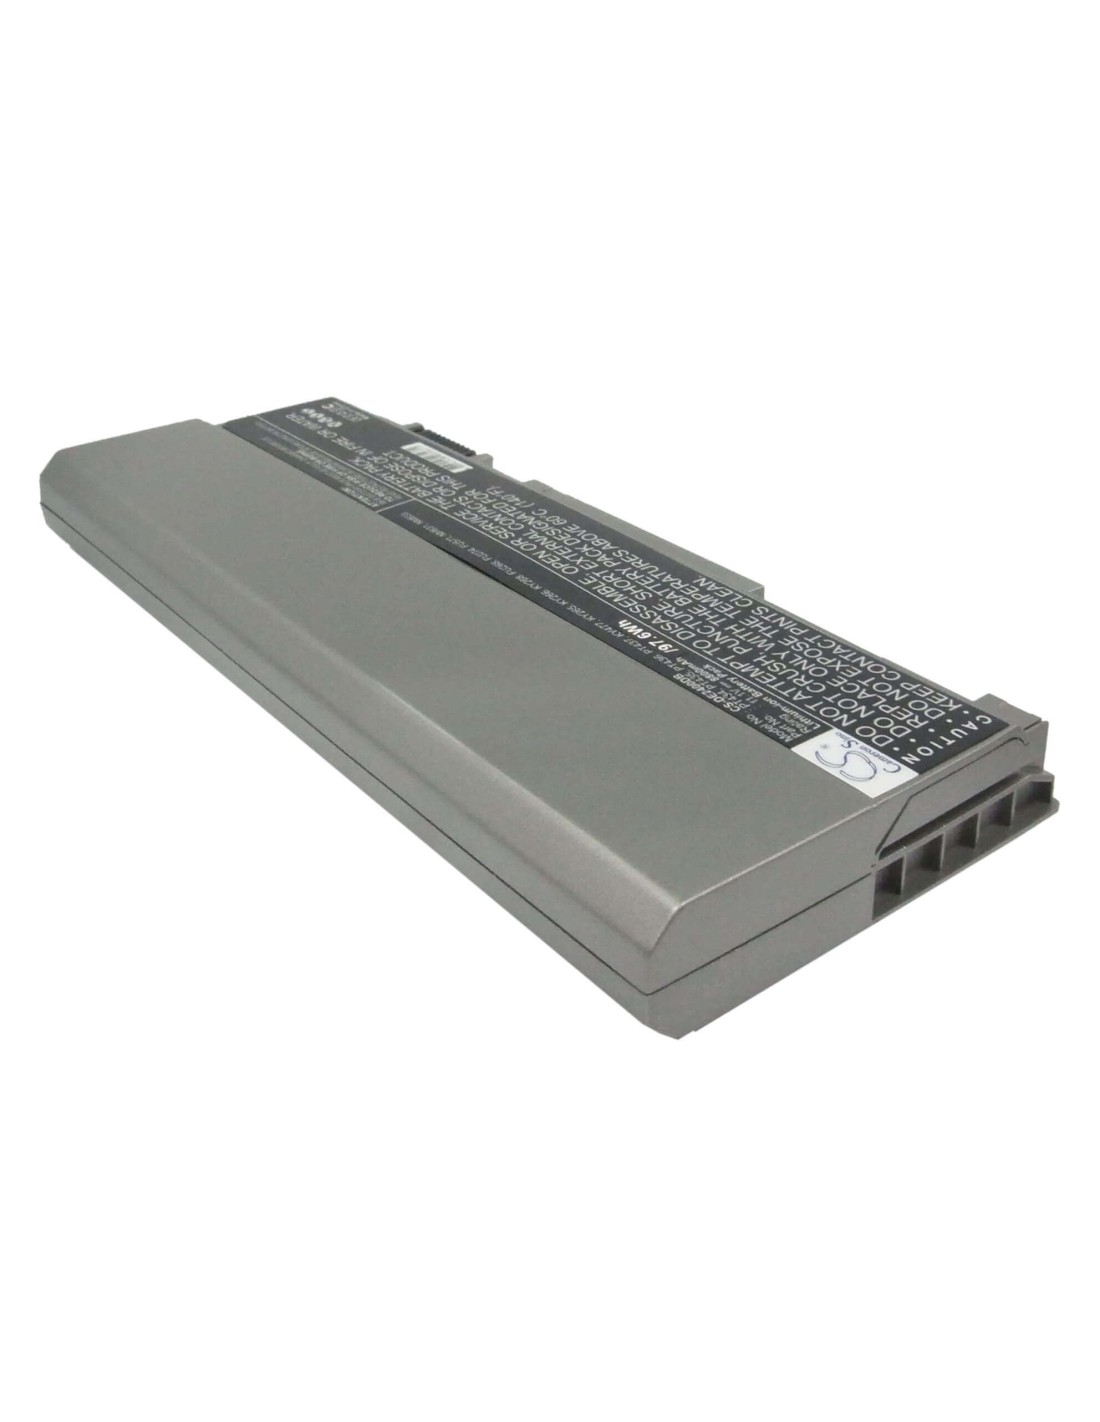 Silver Grey Battery for Dell Latitude E6400, Latitude E6500, Precision M2400 11.1V, 8800mAh - 97.68Wh